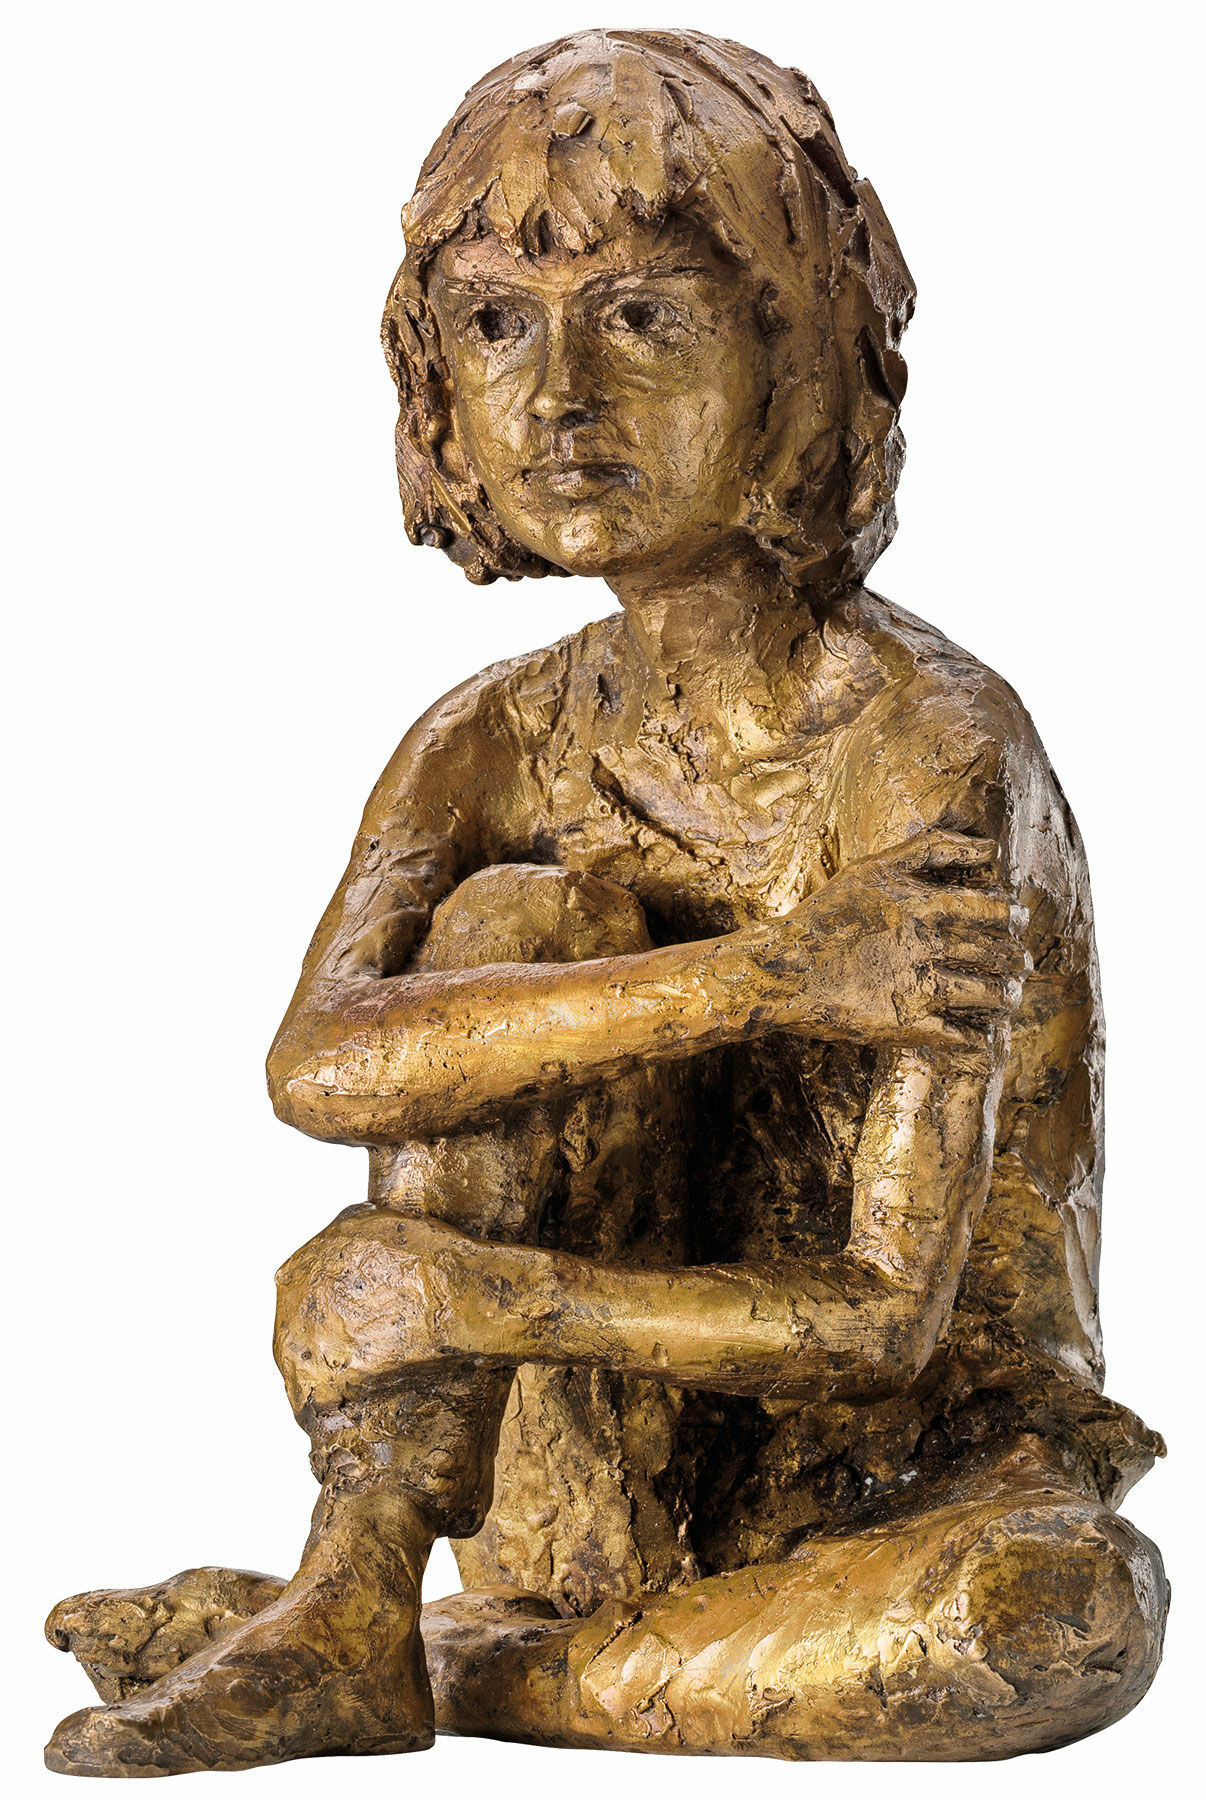 Sculpture "Martha", bronze by Valerie Otte